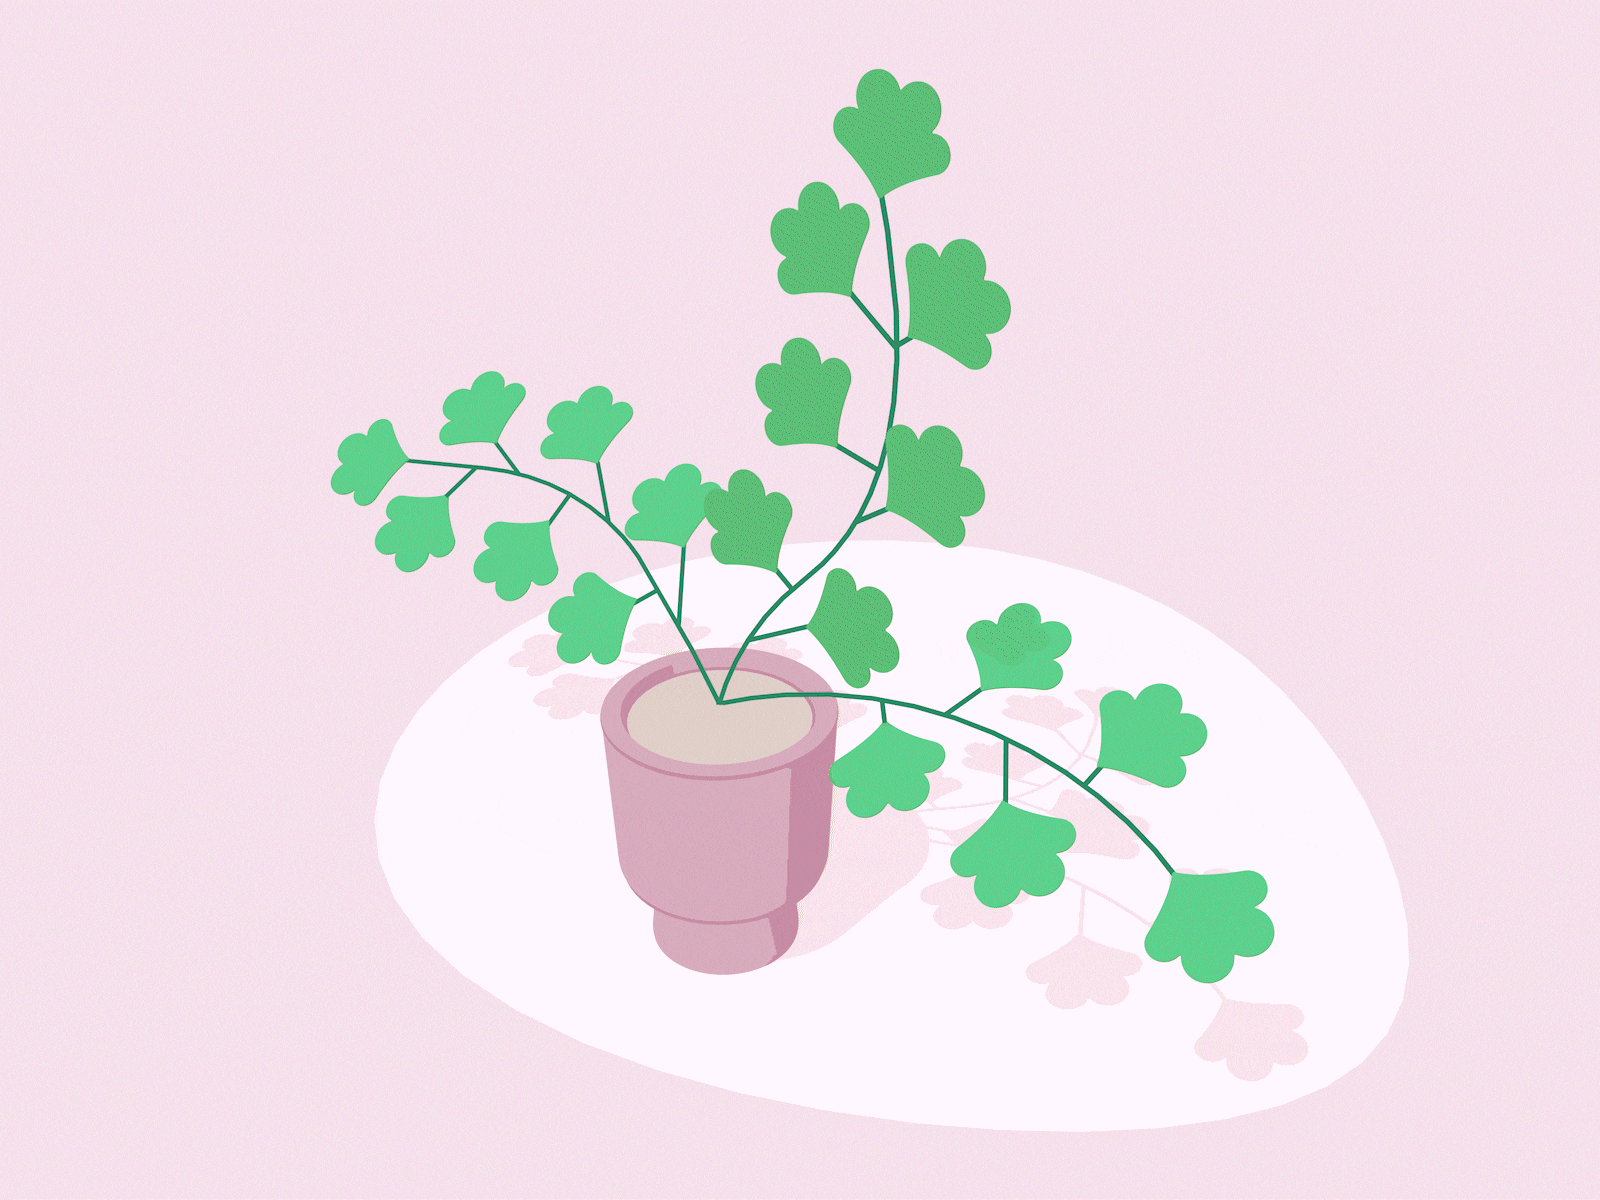 Maidenhair Fern Animation animation design fern flower green illustration maidenhair fern pink plant potted plant wind